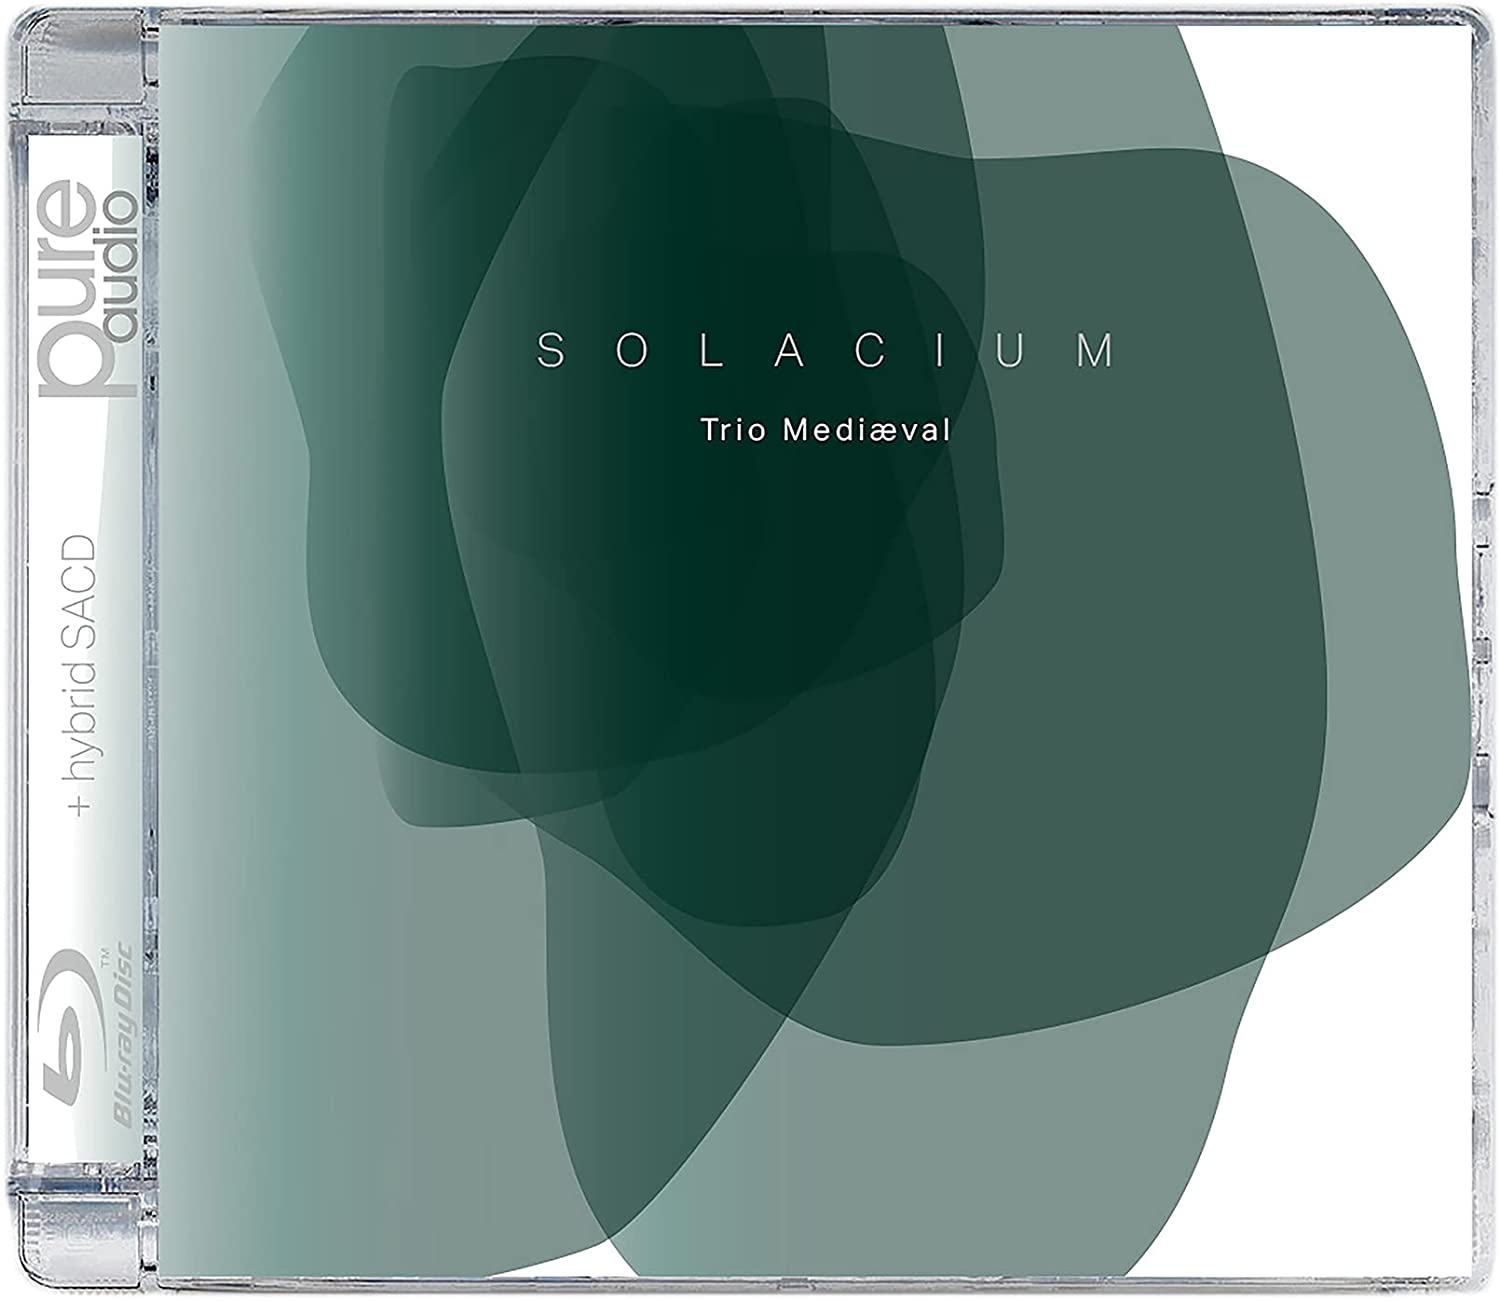 Audio Cd Trio Mediaeval: Solacium NUOVO SIGILLATO EDIZIONE DEL SUBITO DISPONIBILE